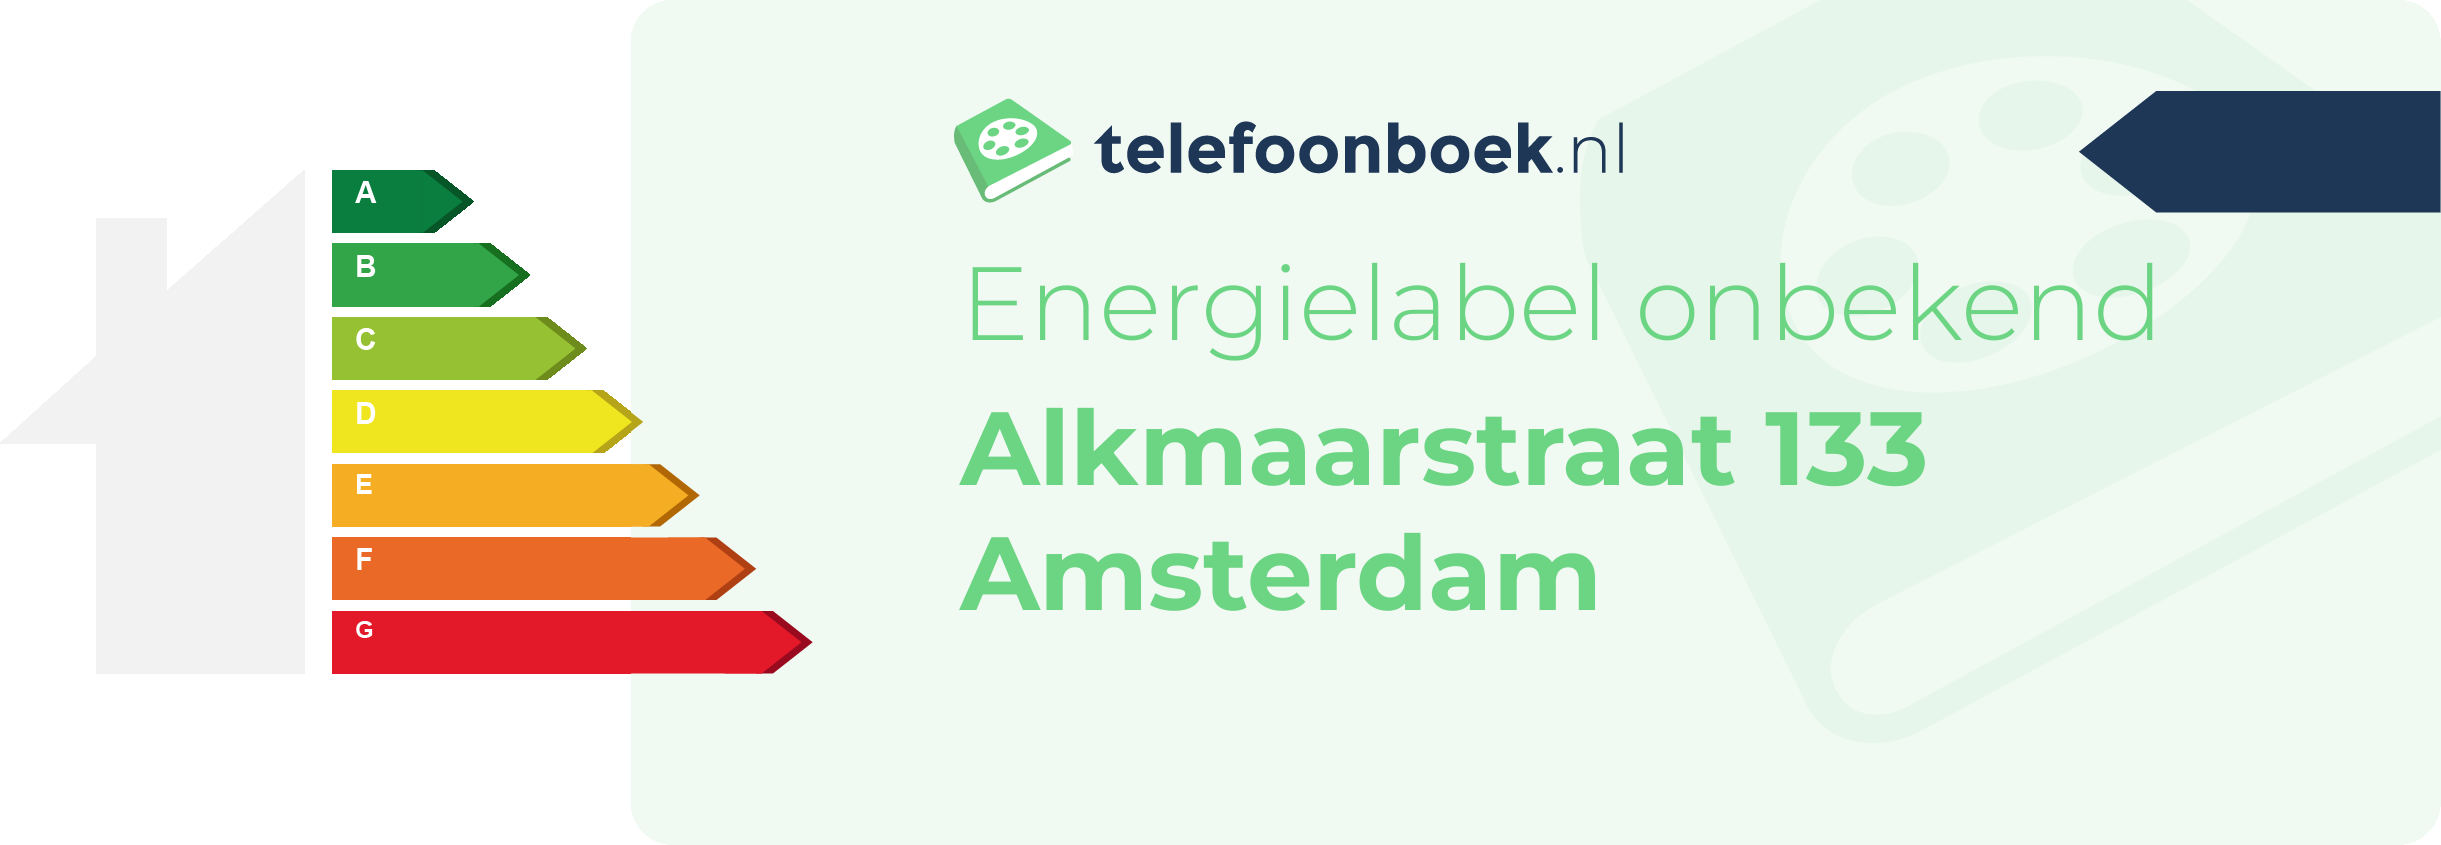 Energielabel Alkmaarstraat 133 Amsterdam